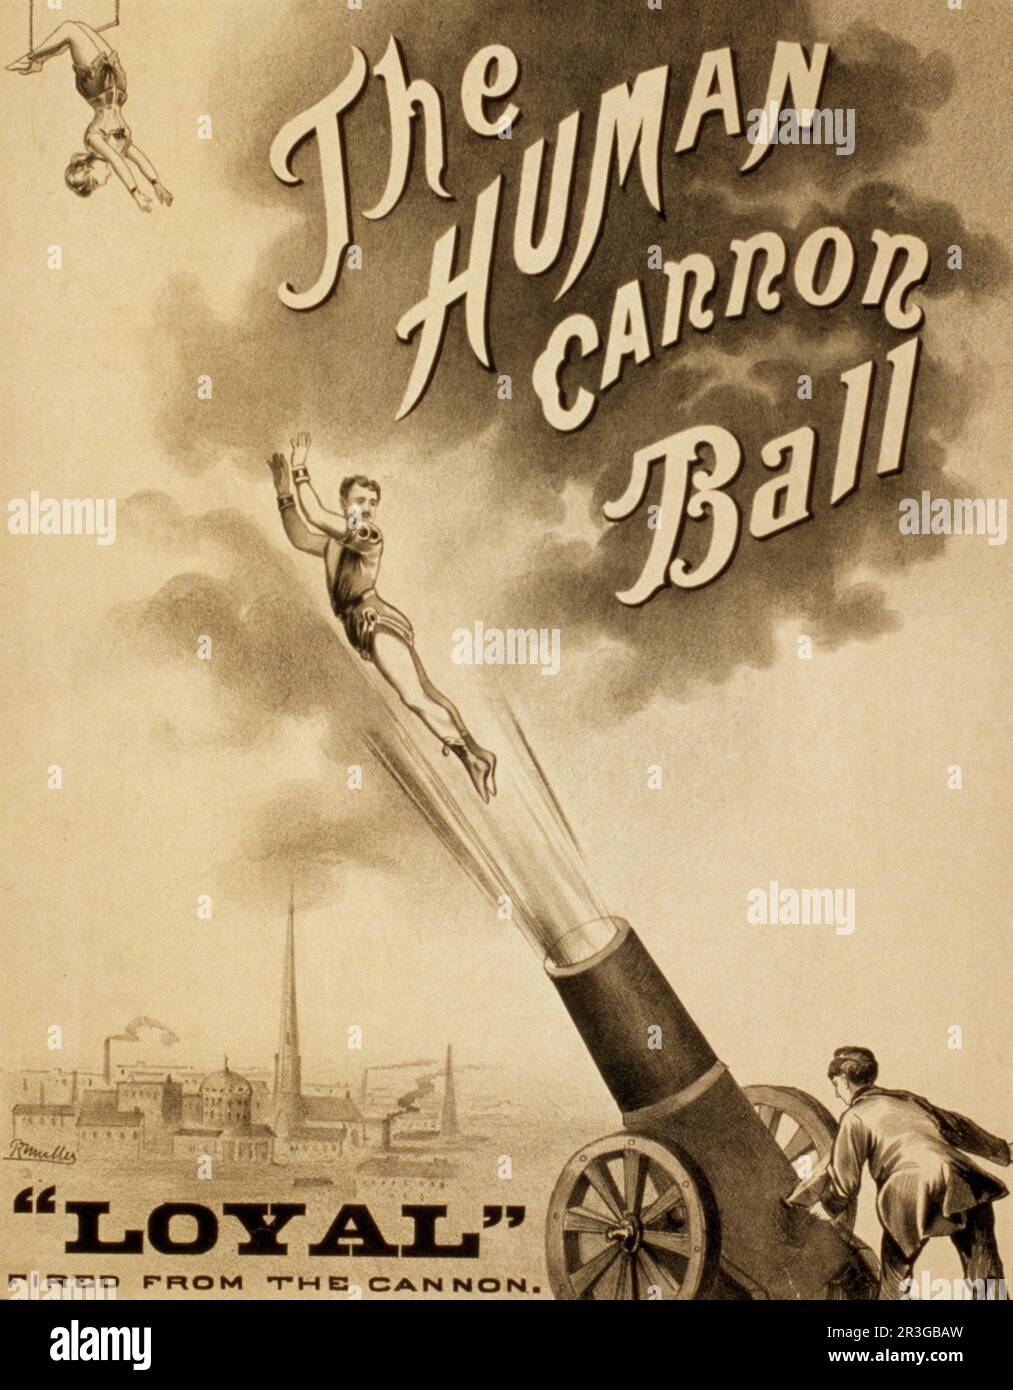 La palla di cannone umano, poster del circo d'epoca, circa 1879. Foto Stock